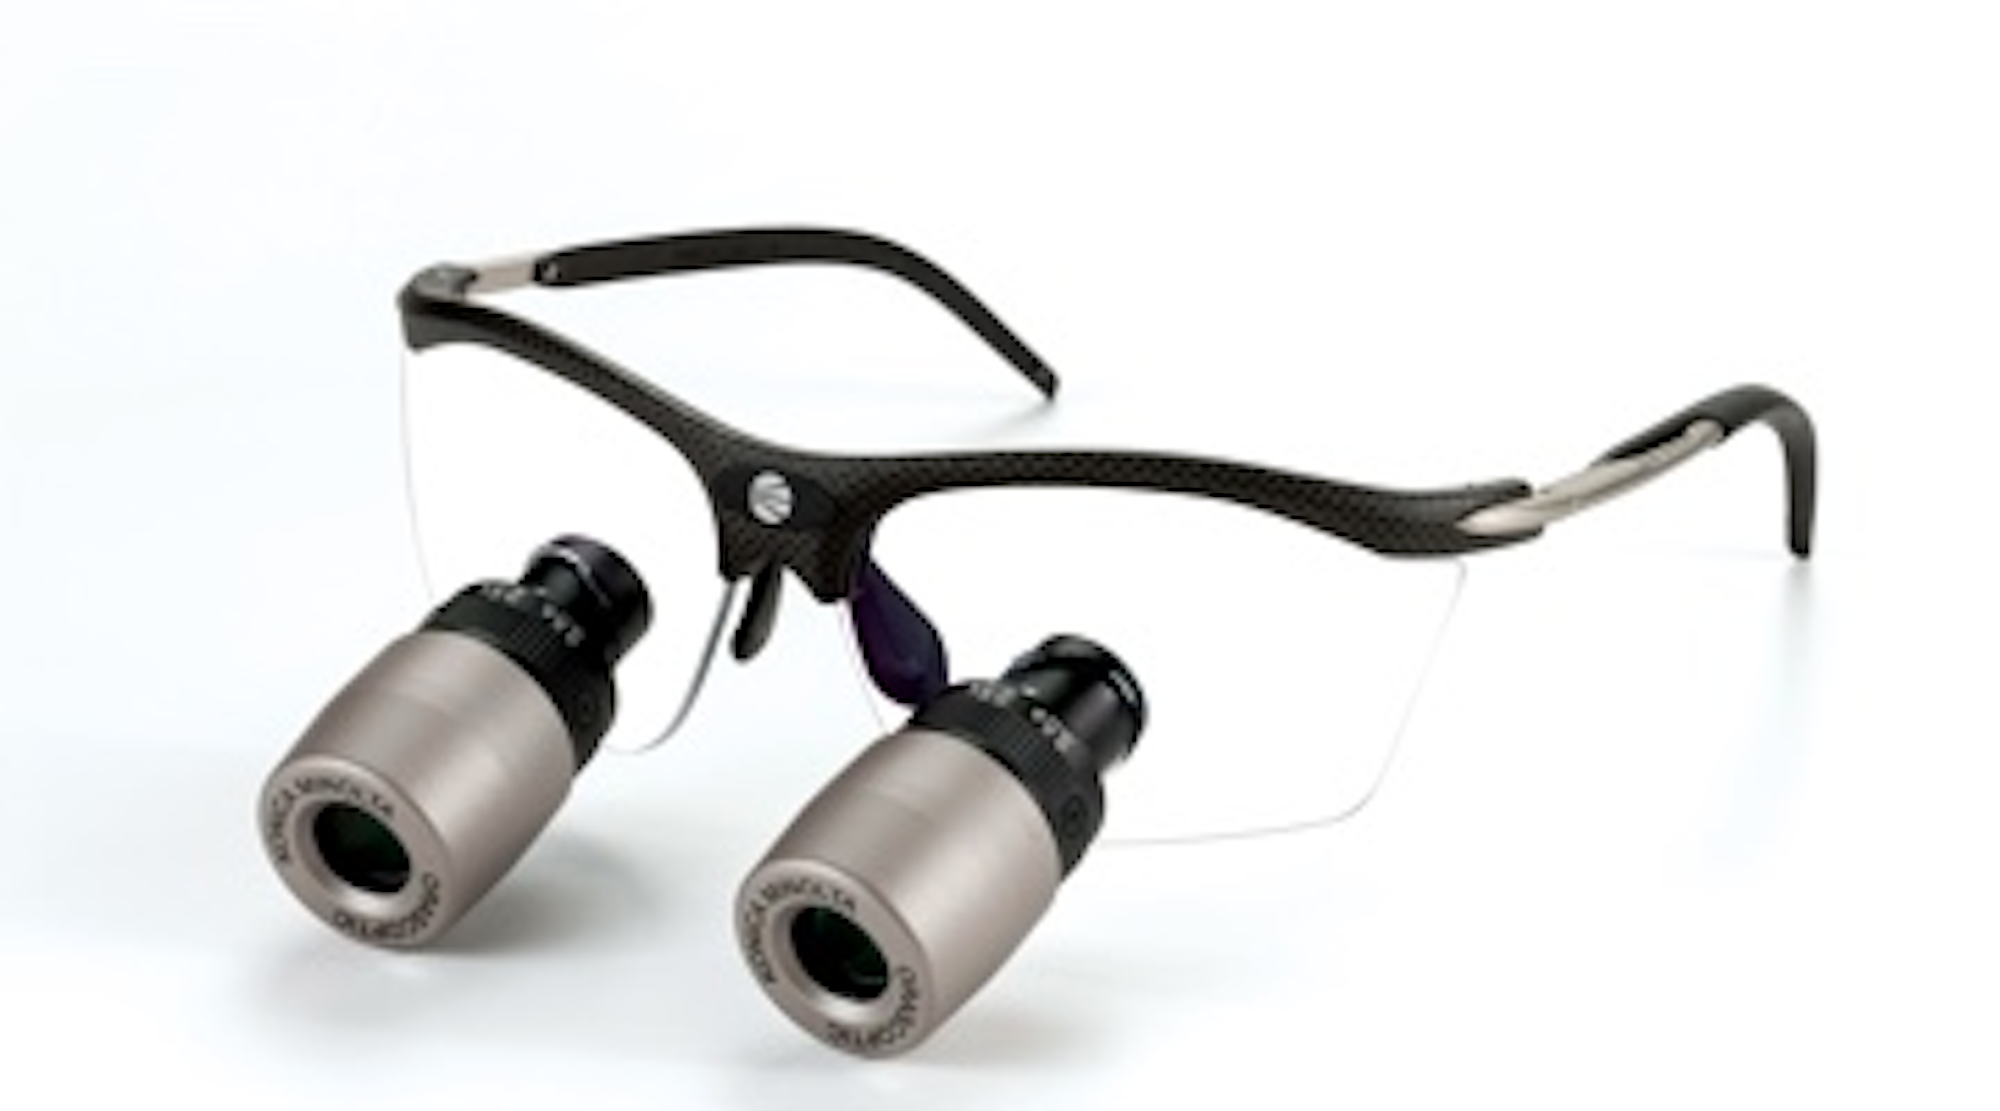 Orascoptic launches EyeZoom Mini adjustable magnification loupe ...